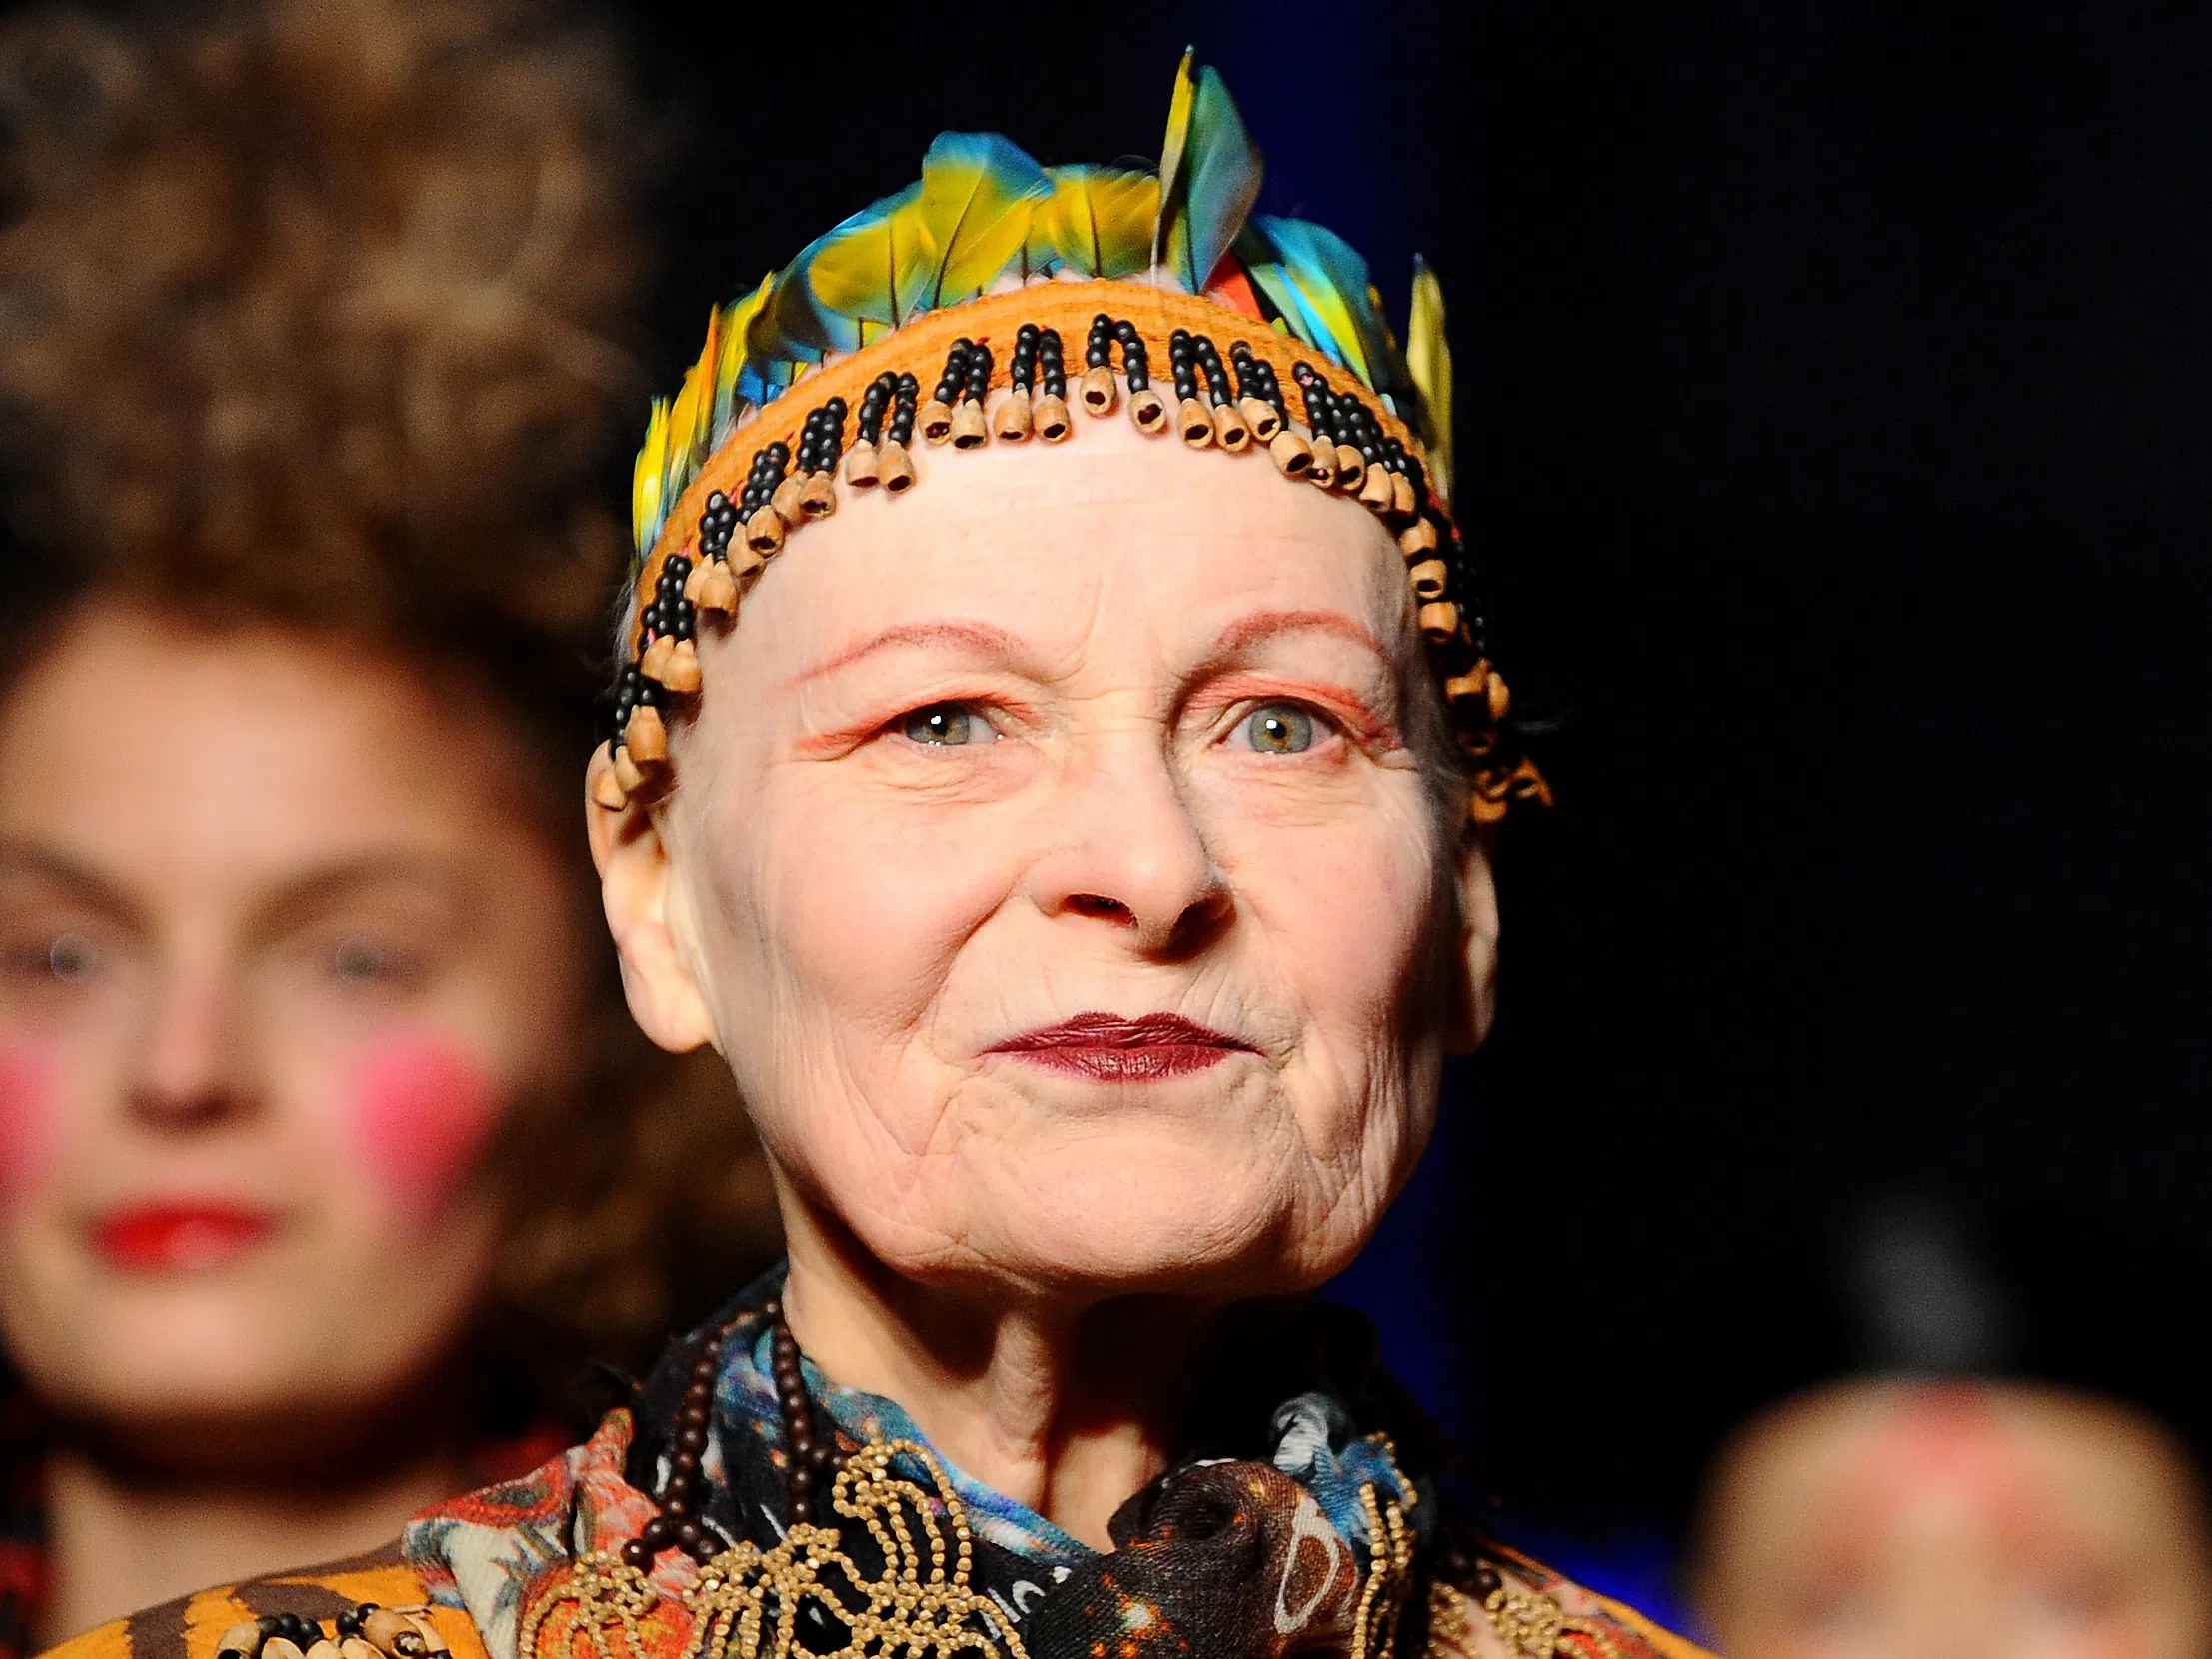 Вивиан Уестууд - кралицата на британската мода и покровител на пънк културата